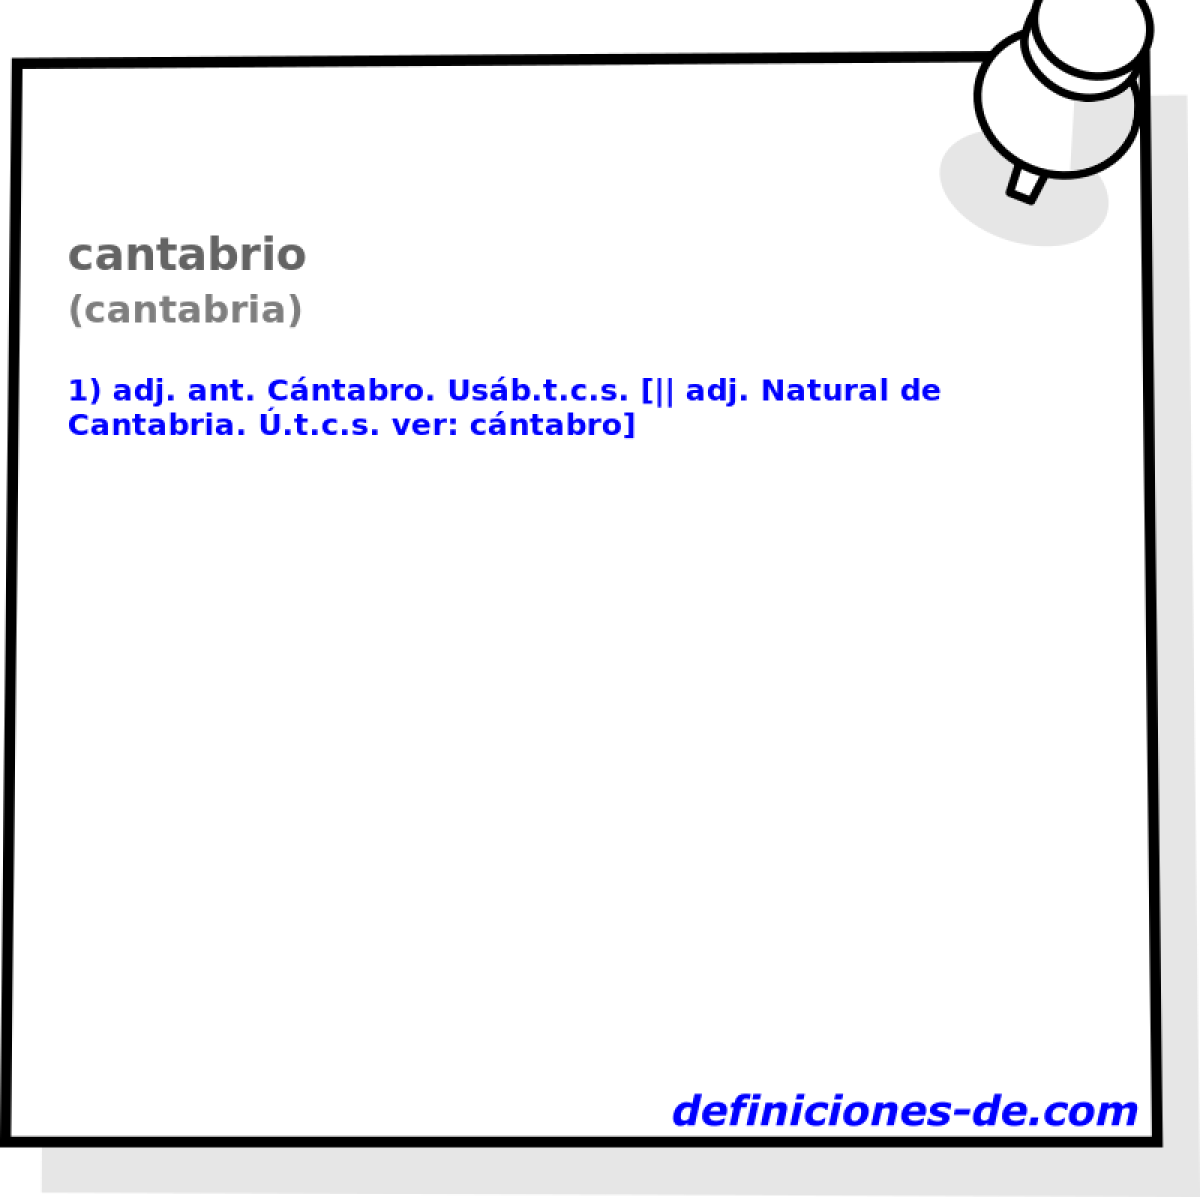 cantabrio (cantabria)